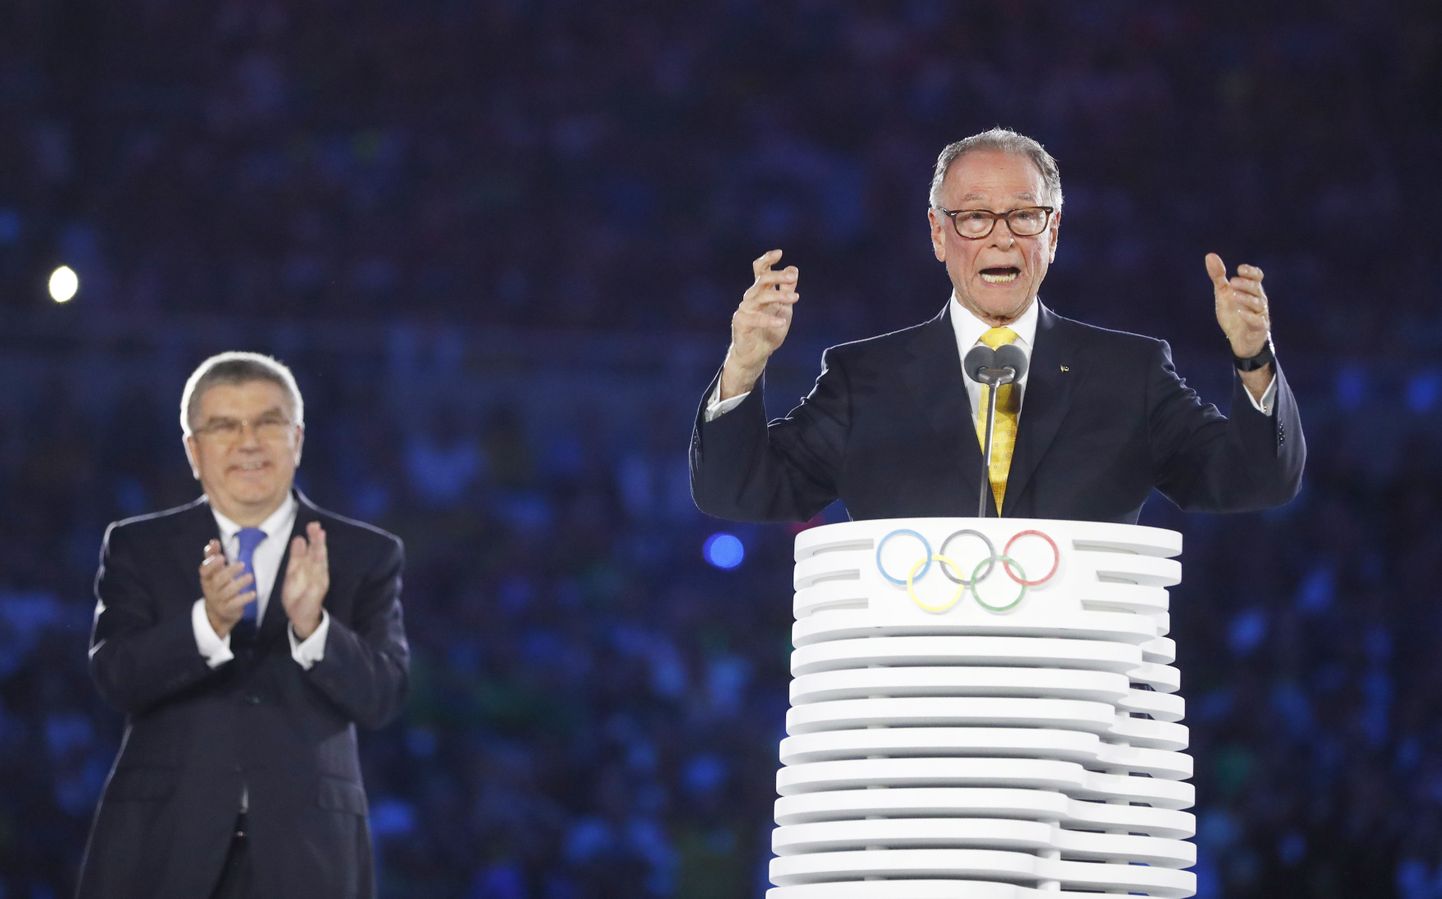 Полицейские провели обыск в доме экс-главы оргкомитета Олимпийских игр 2016 года Карлоса Артура Нузмана.